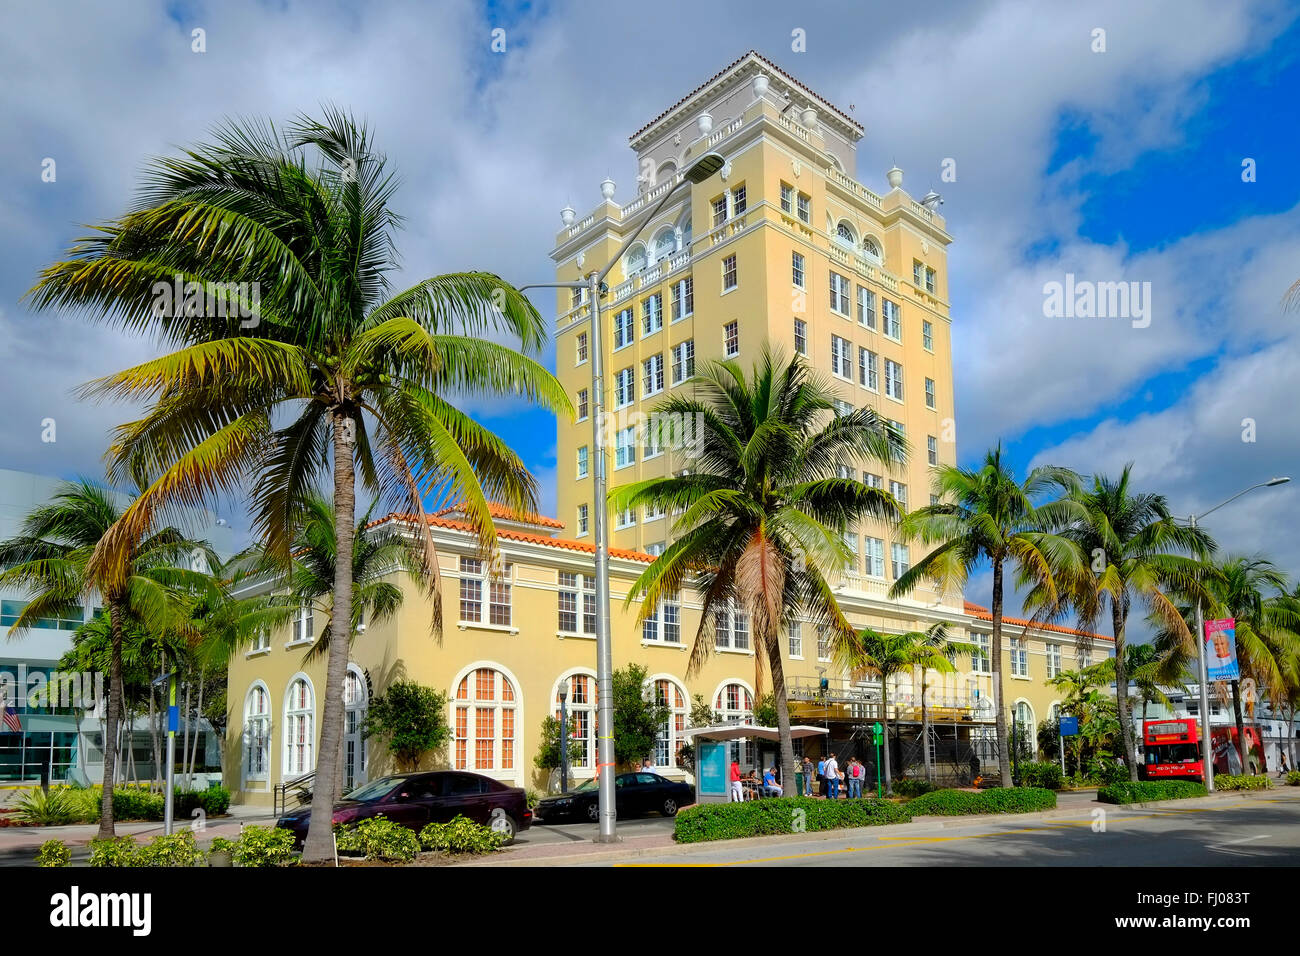 La splendida città vecchia Hall Miami Beach Florida FL Art Deco Ocean Drive e South Beach Foto Stock